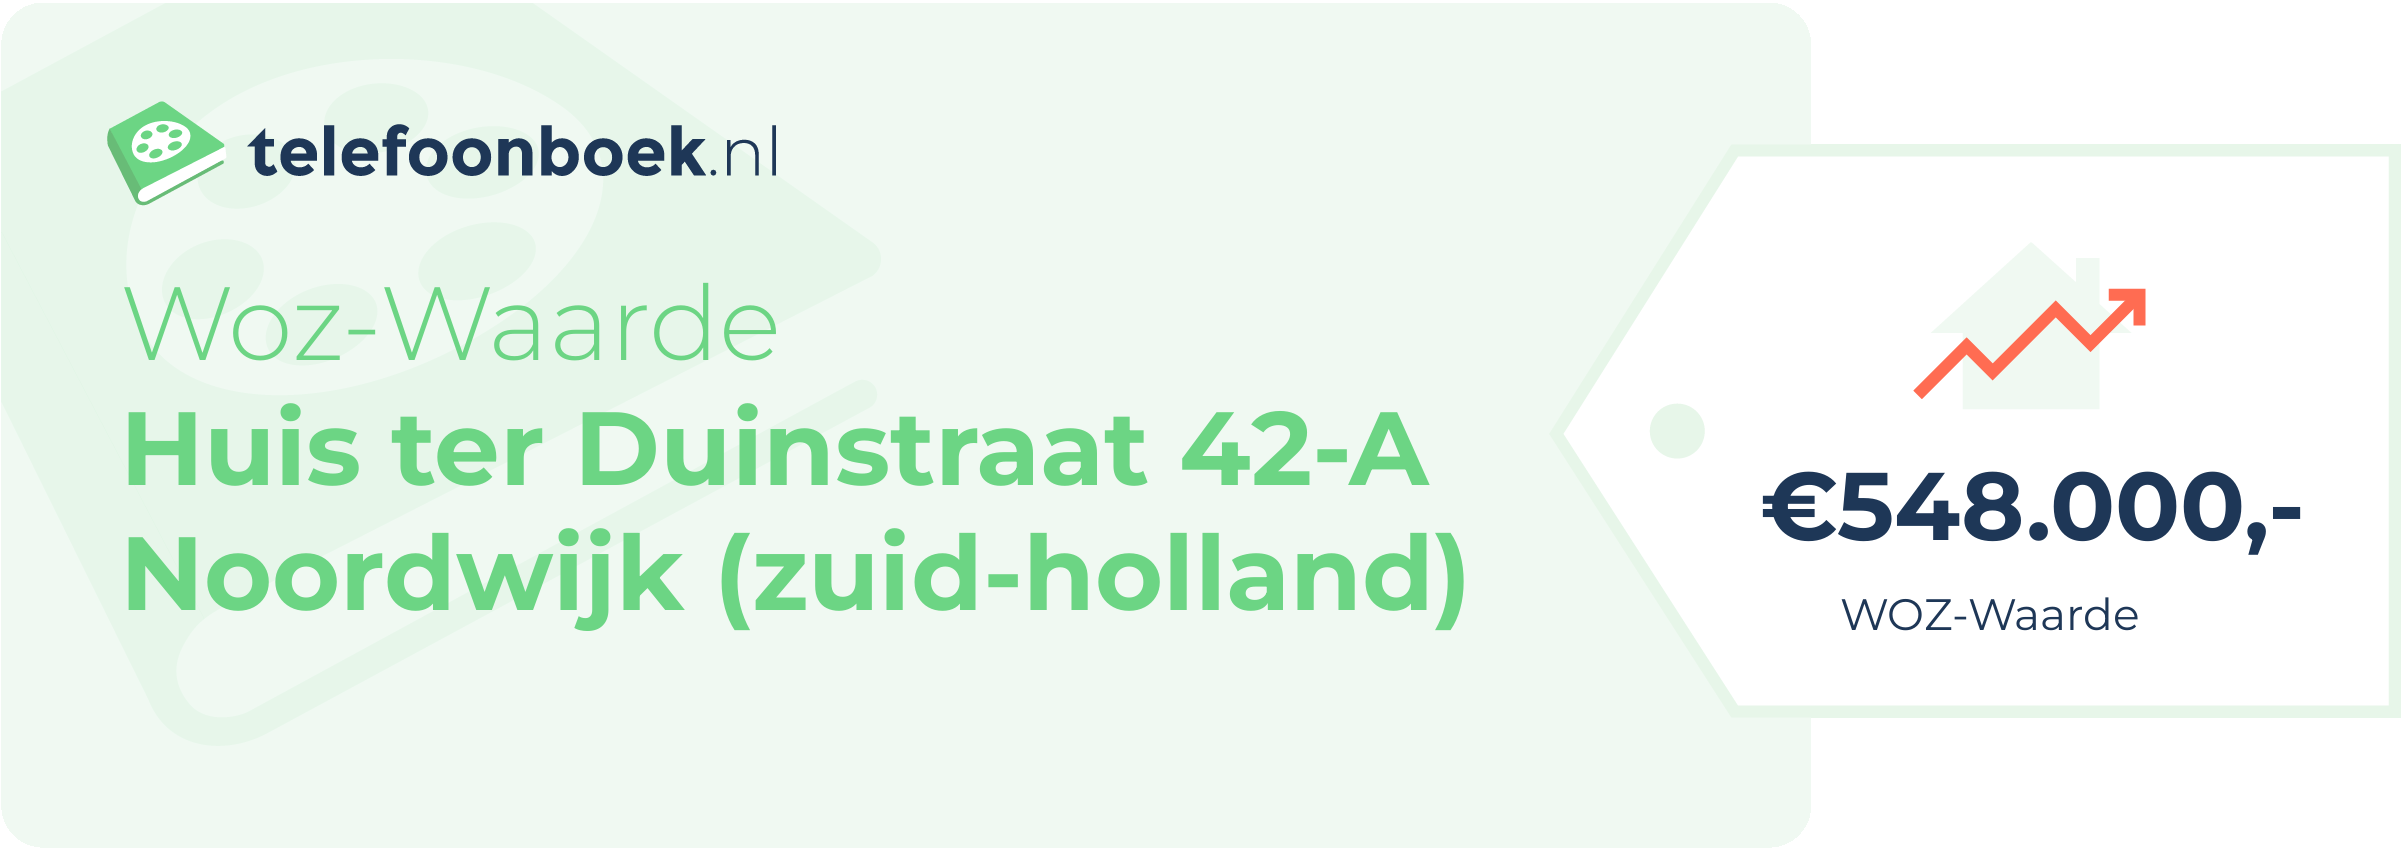 WOZ-waarde Huis Ter Duinstraat 42-A Noordwijk (Zuid-Holland)